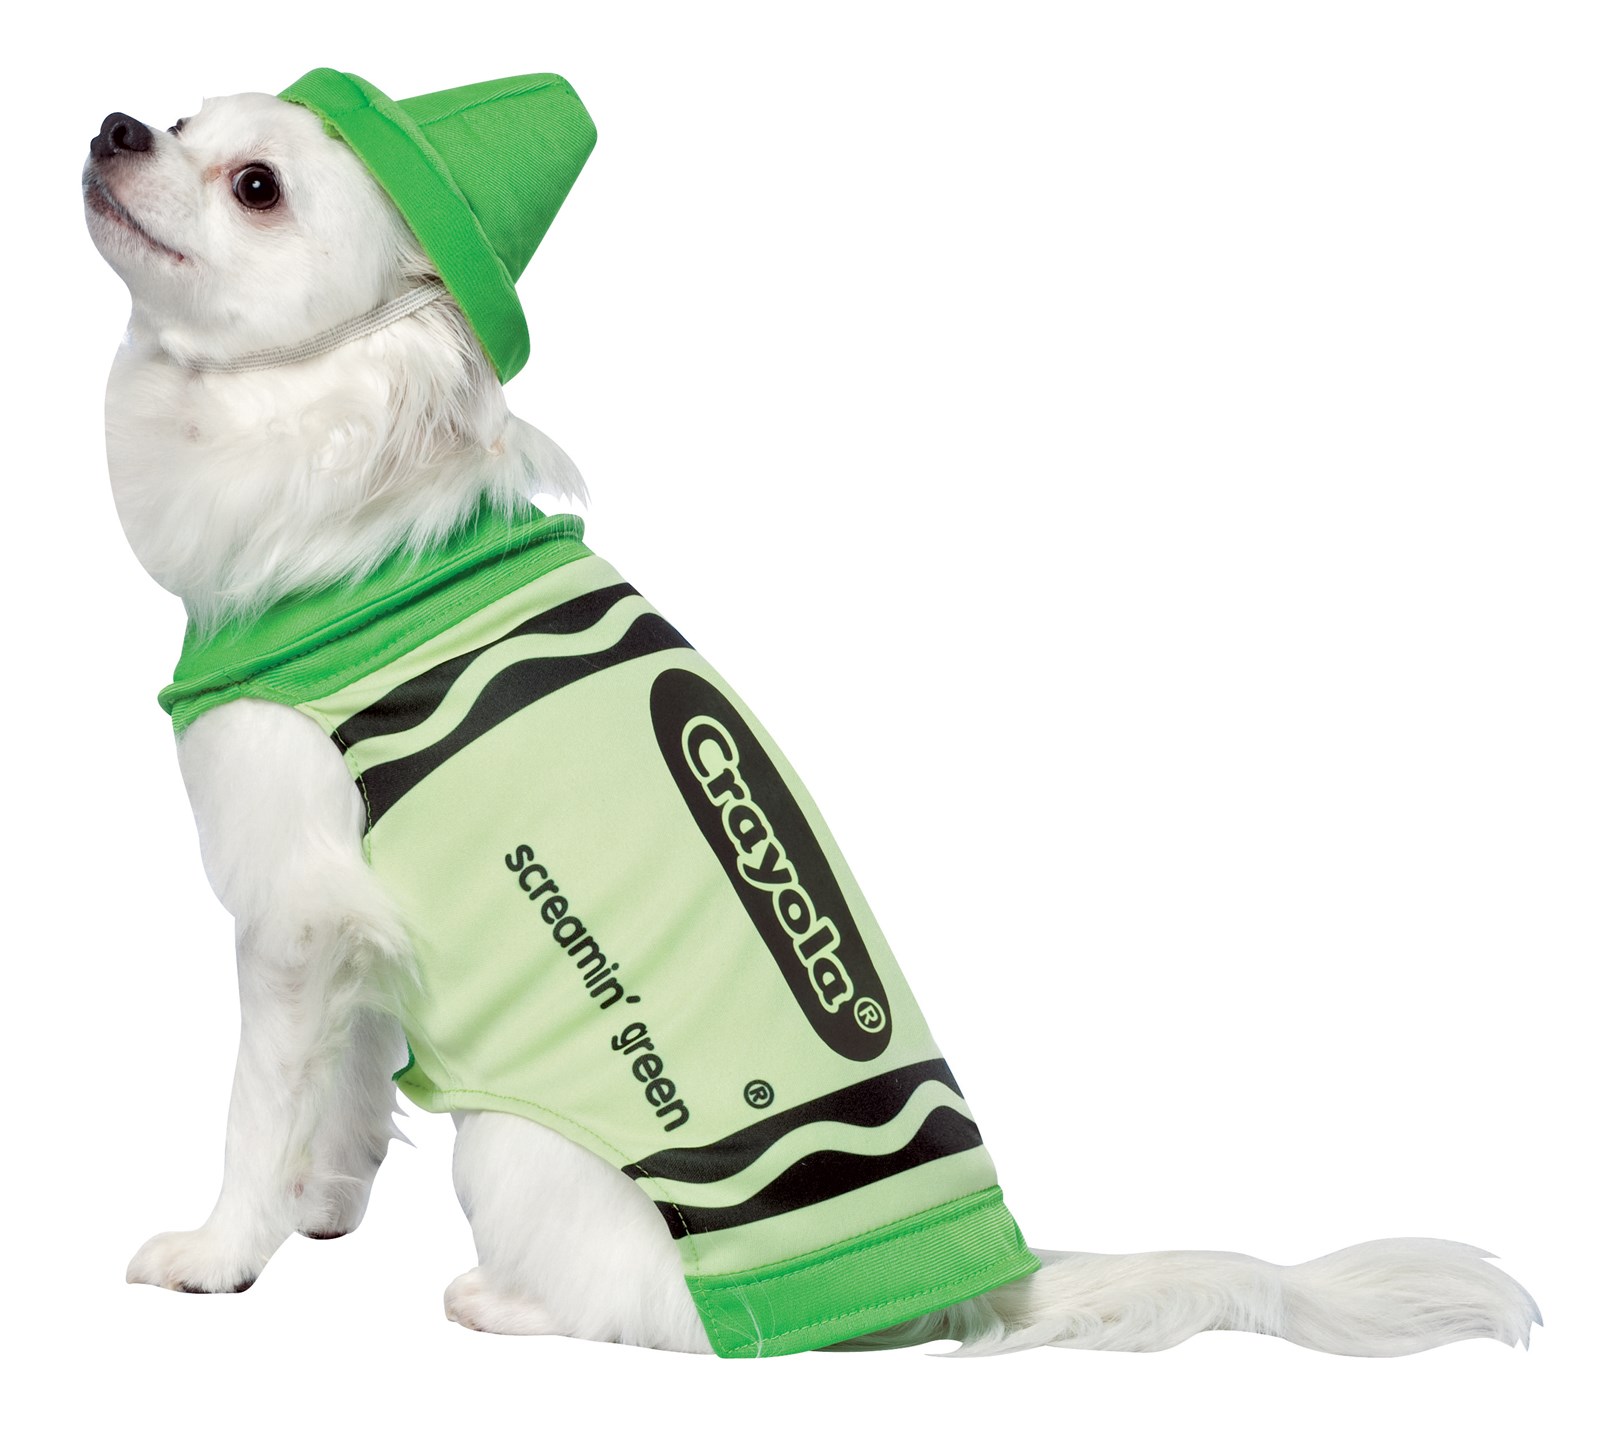 Crayola Green Crayon Pet Costume